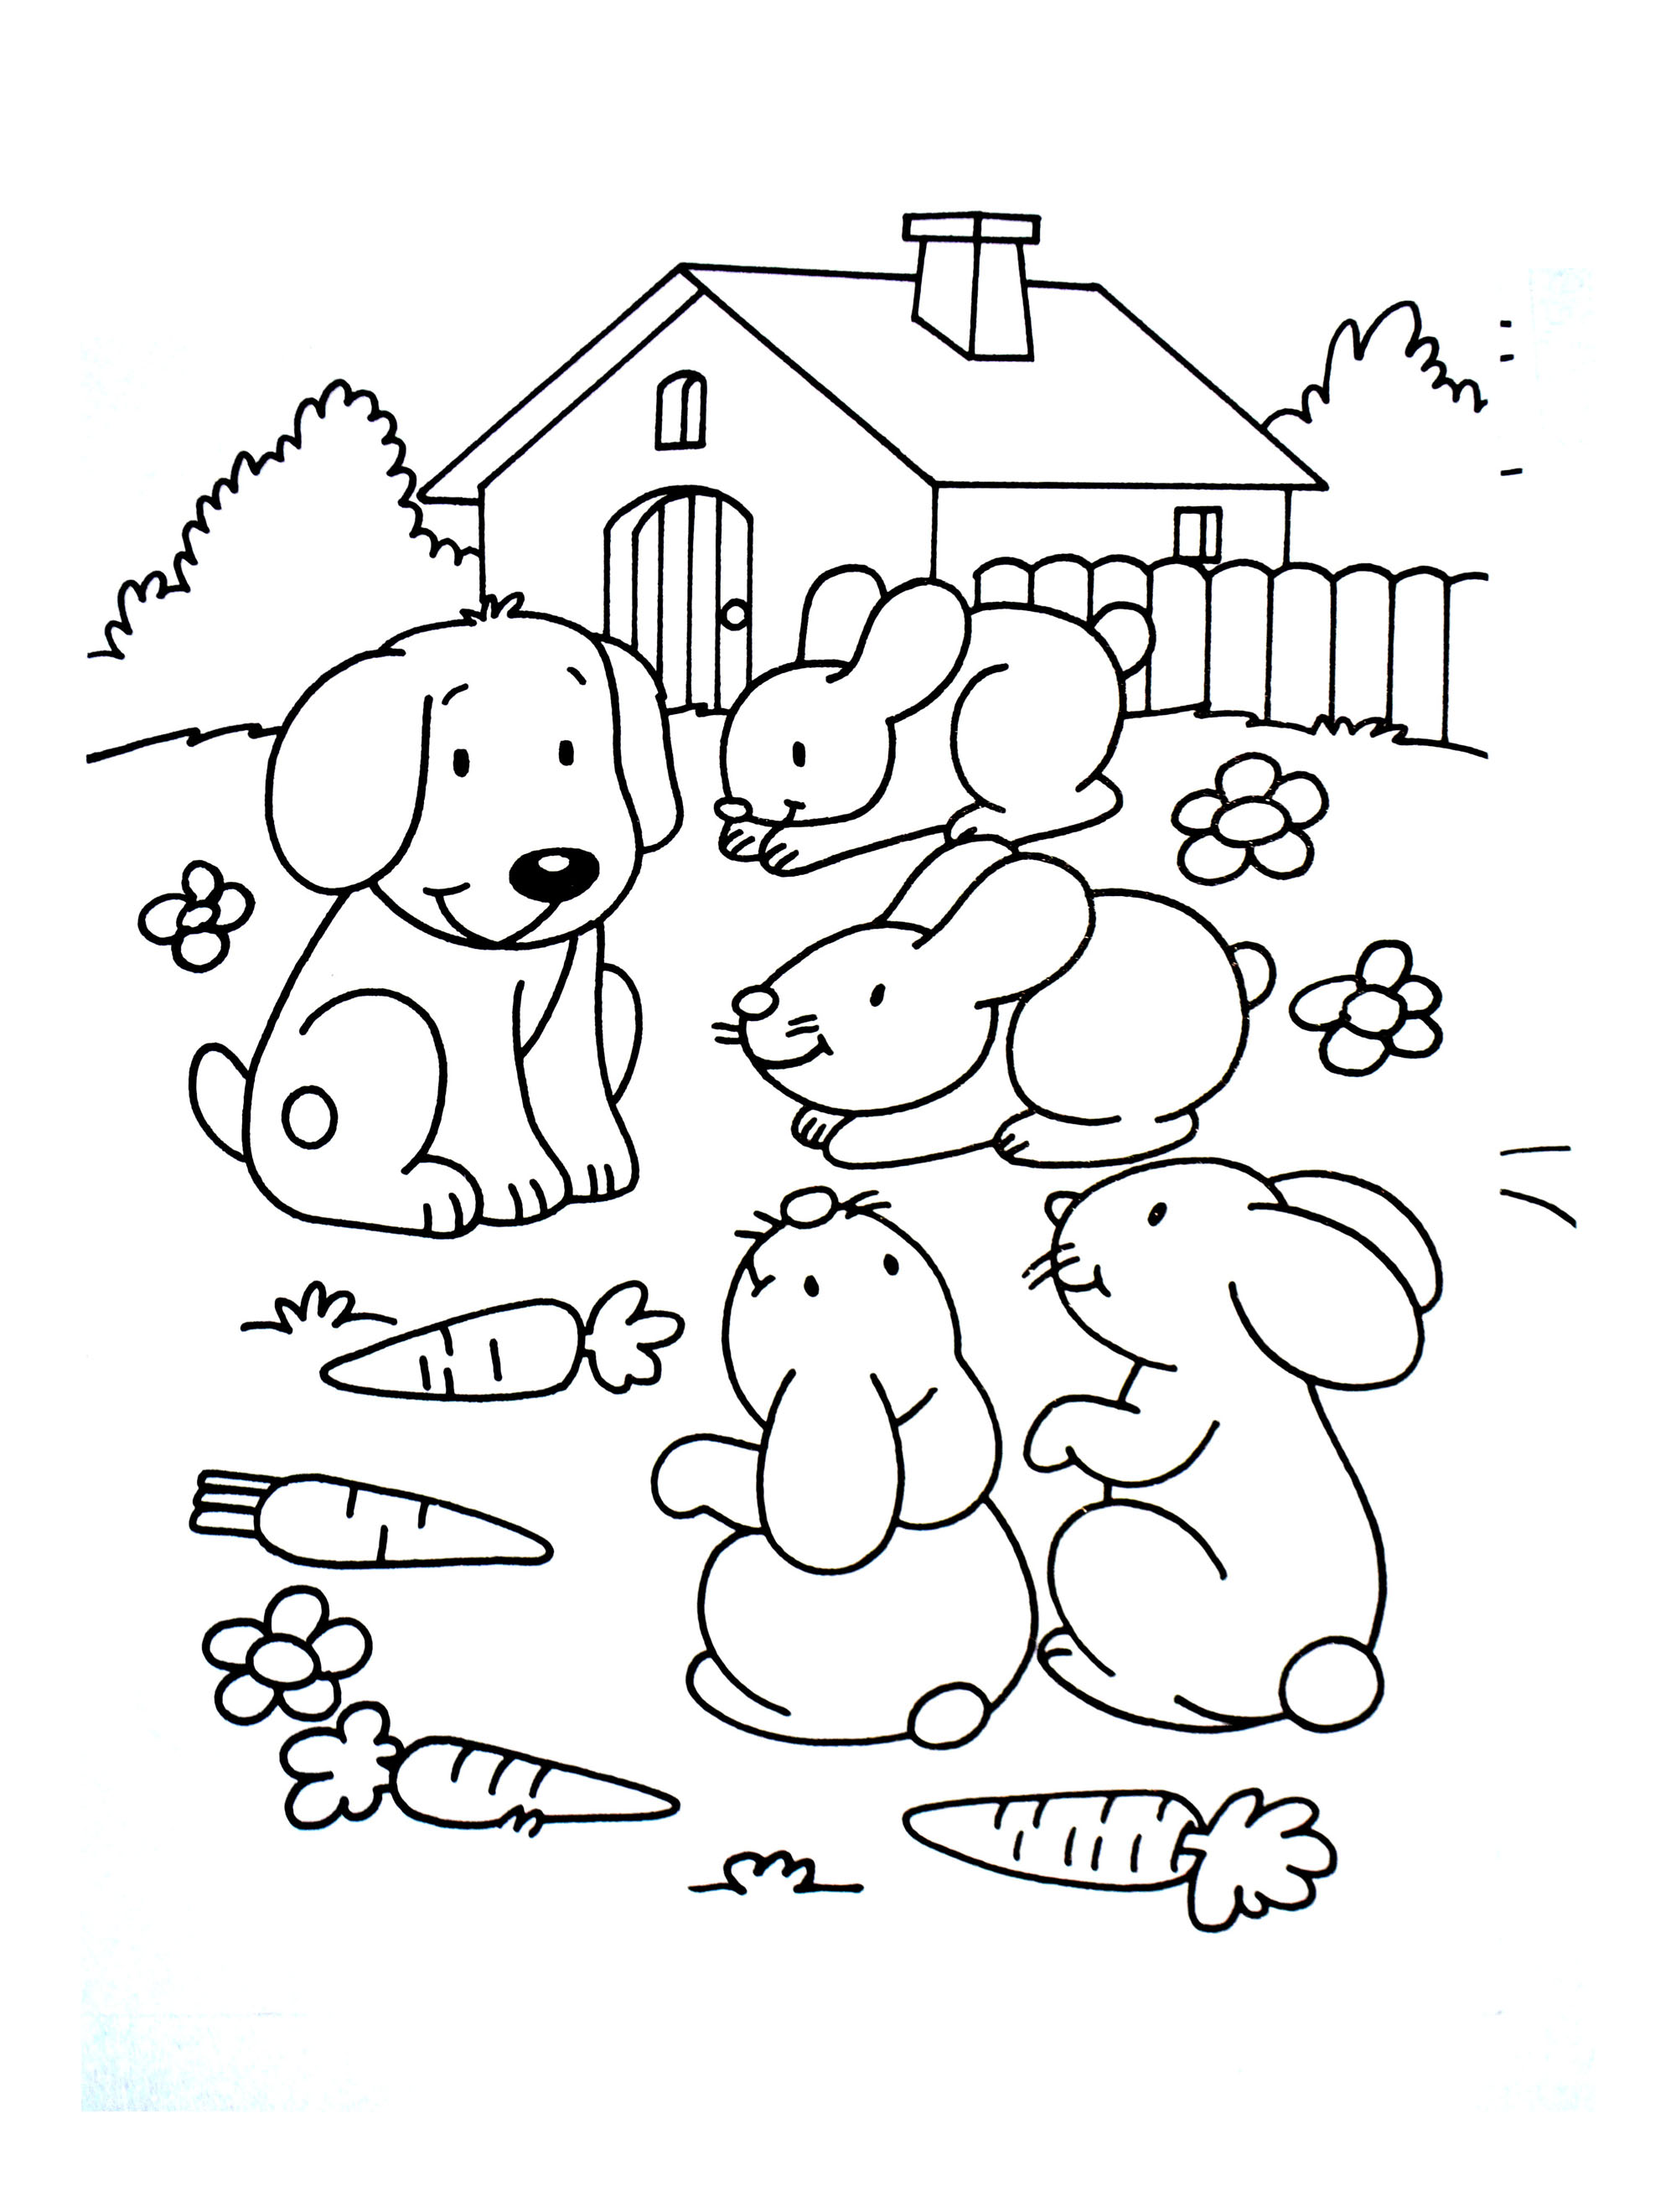 Disegno da colorare di cane con gli animali della fattoria stile cartone animato per bambini 